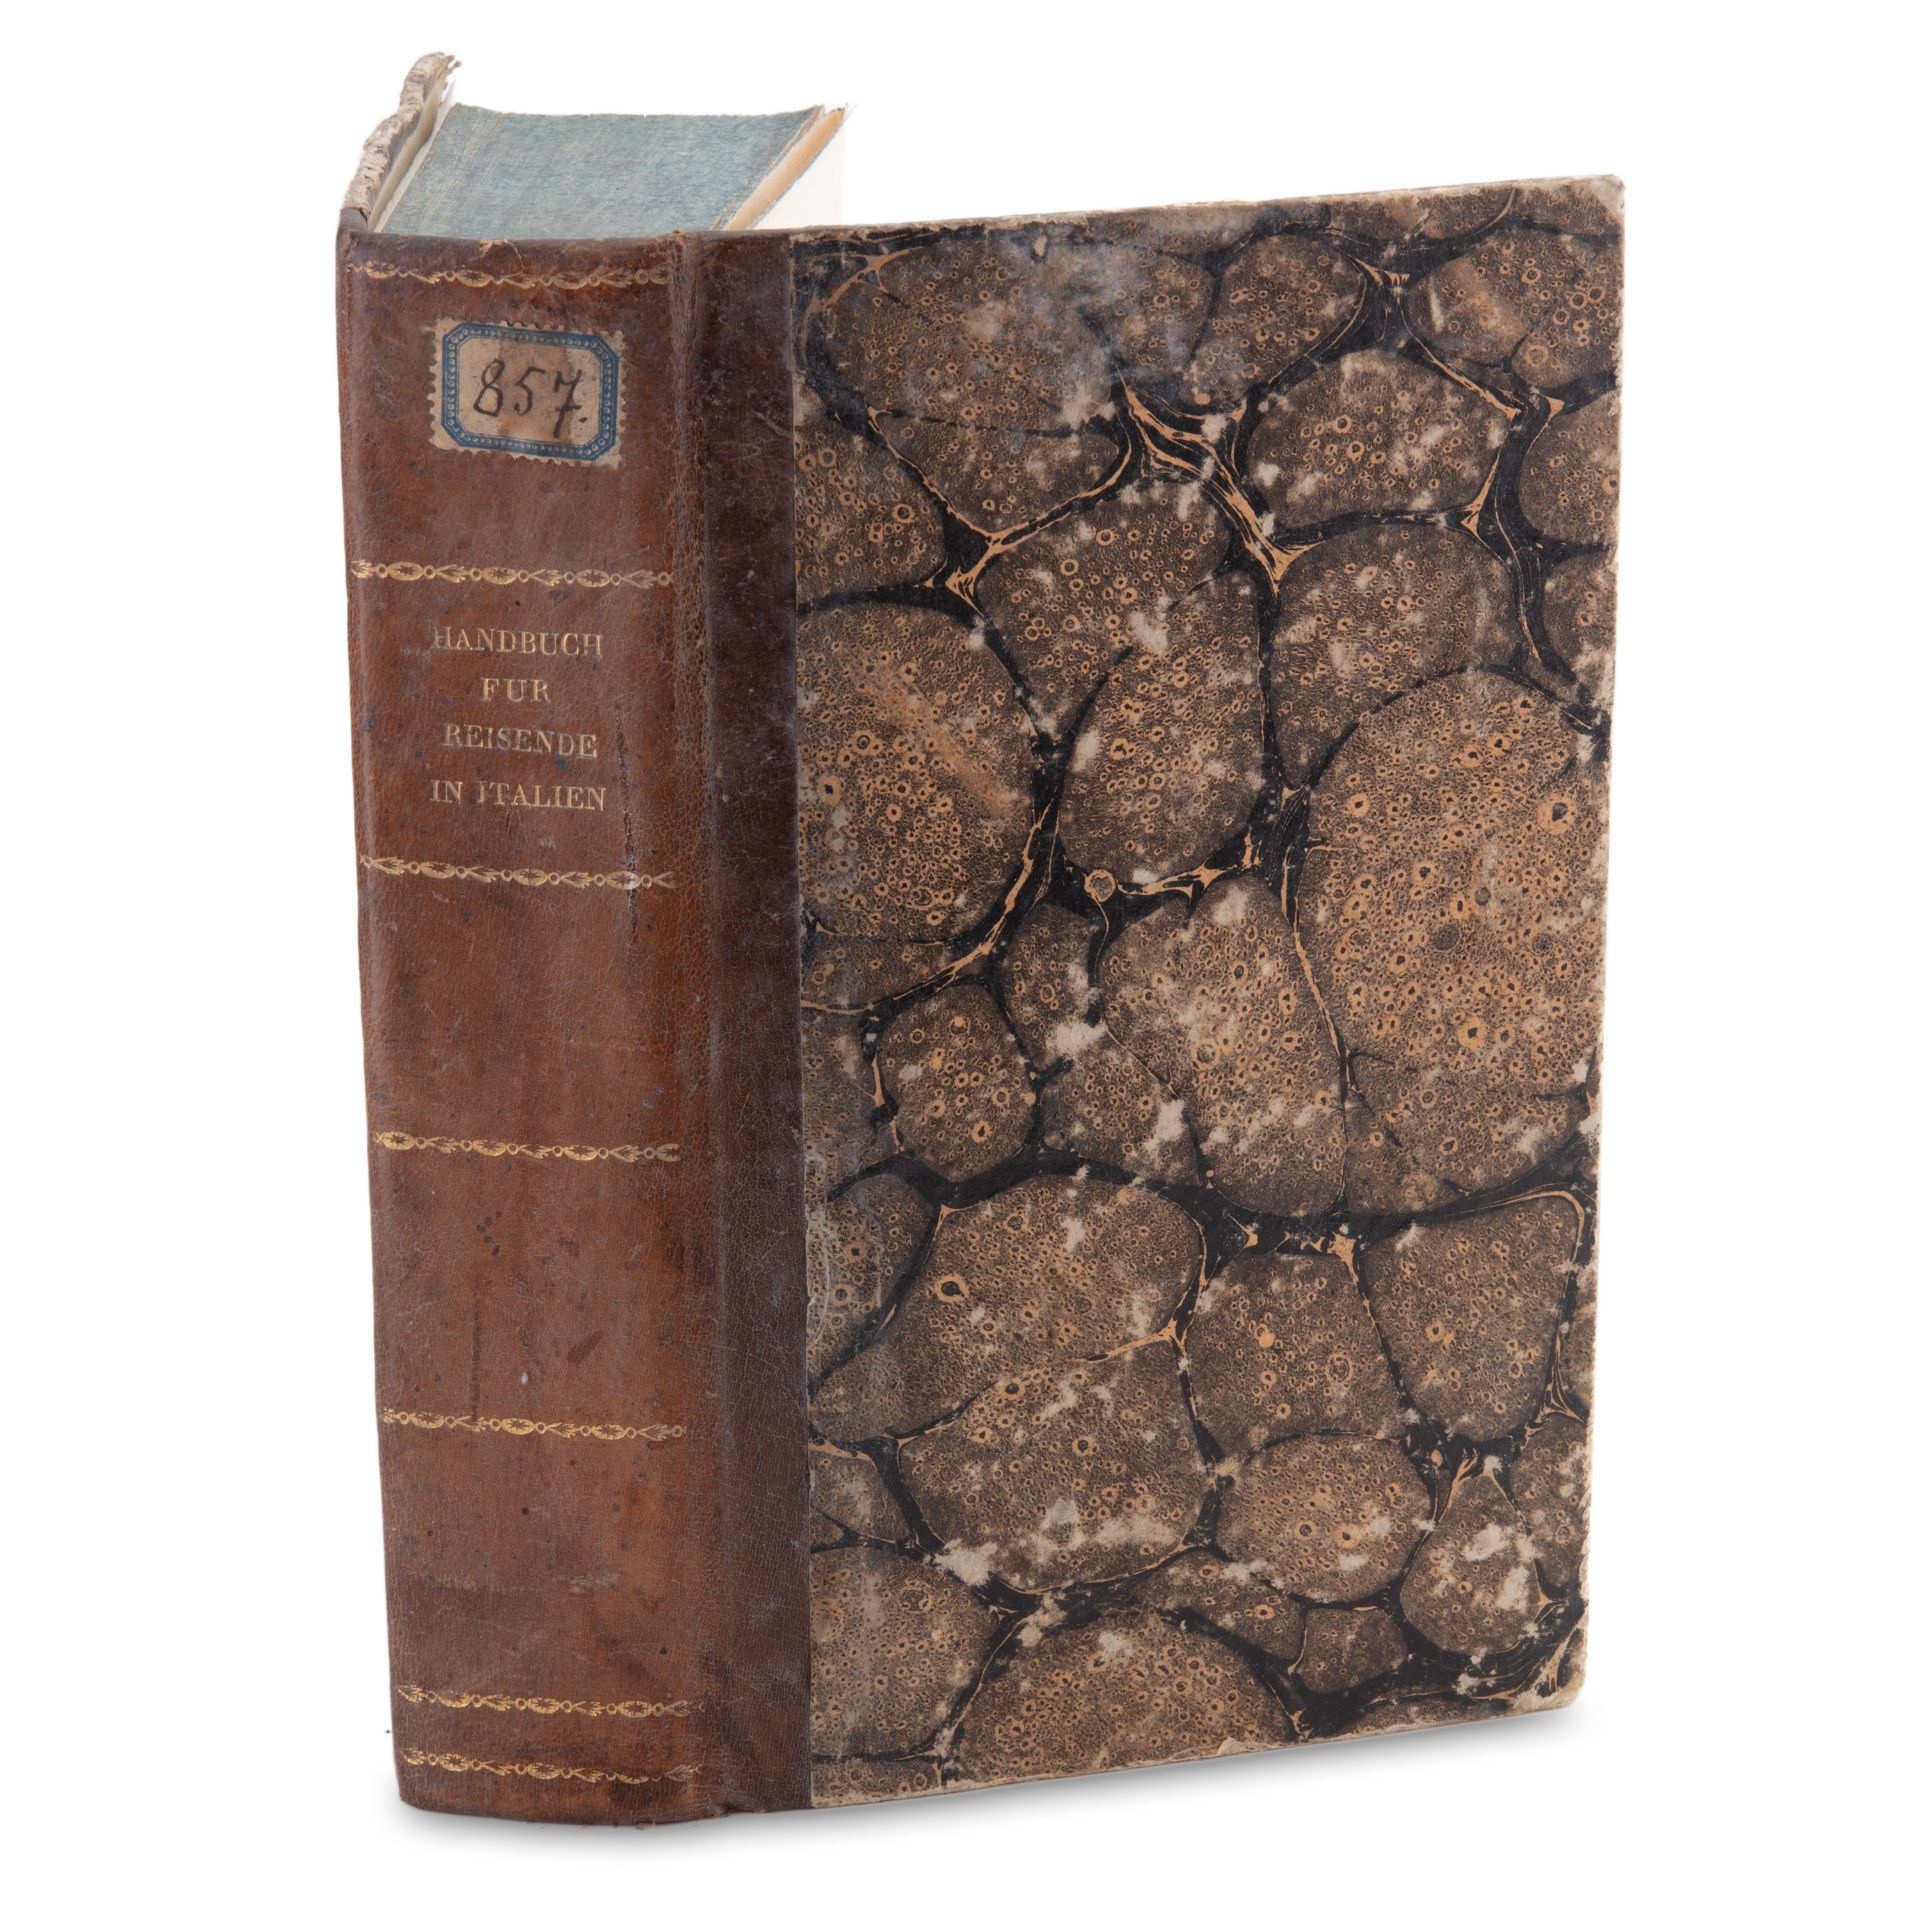 NEIGEBAUR, [Johann Daniel Ferdinand] (1783-1866): Handbuch fur Reisende in Italien - Bild 2 aus 3